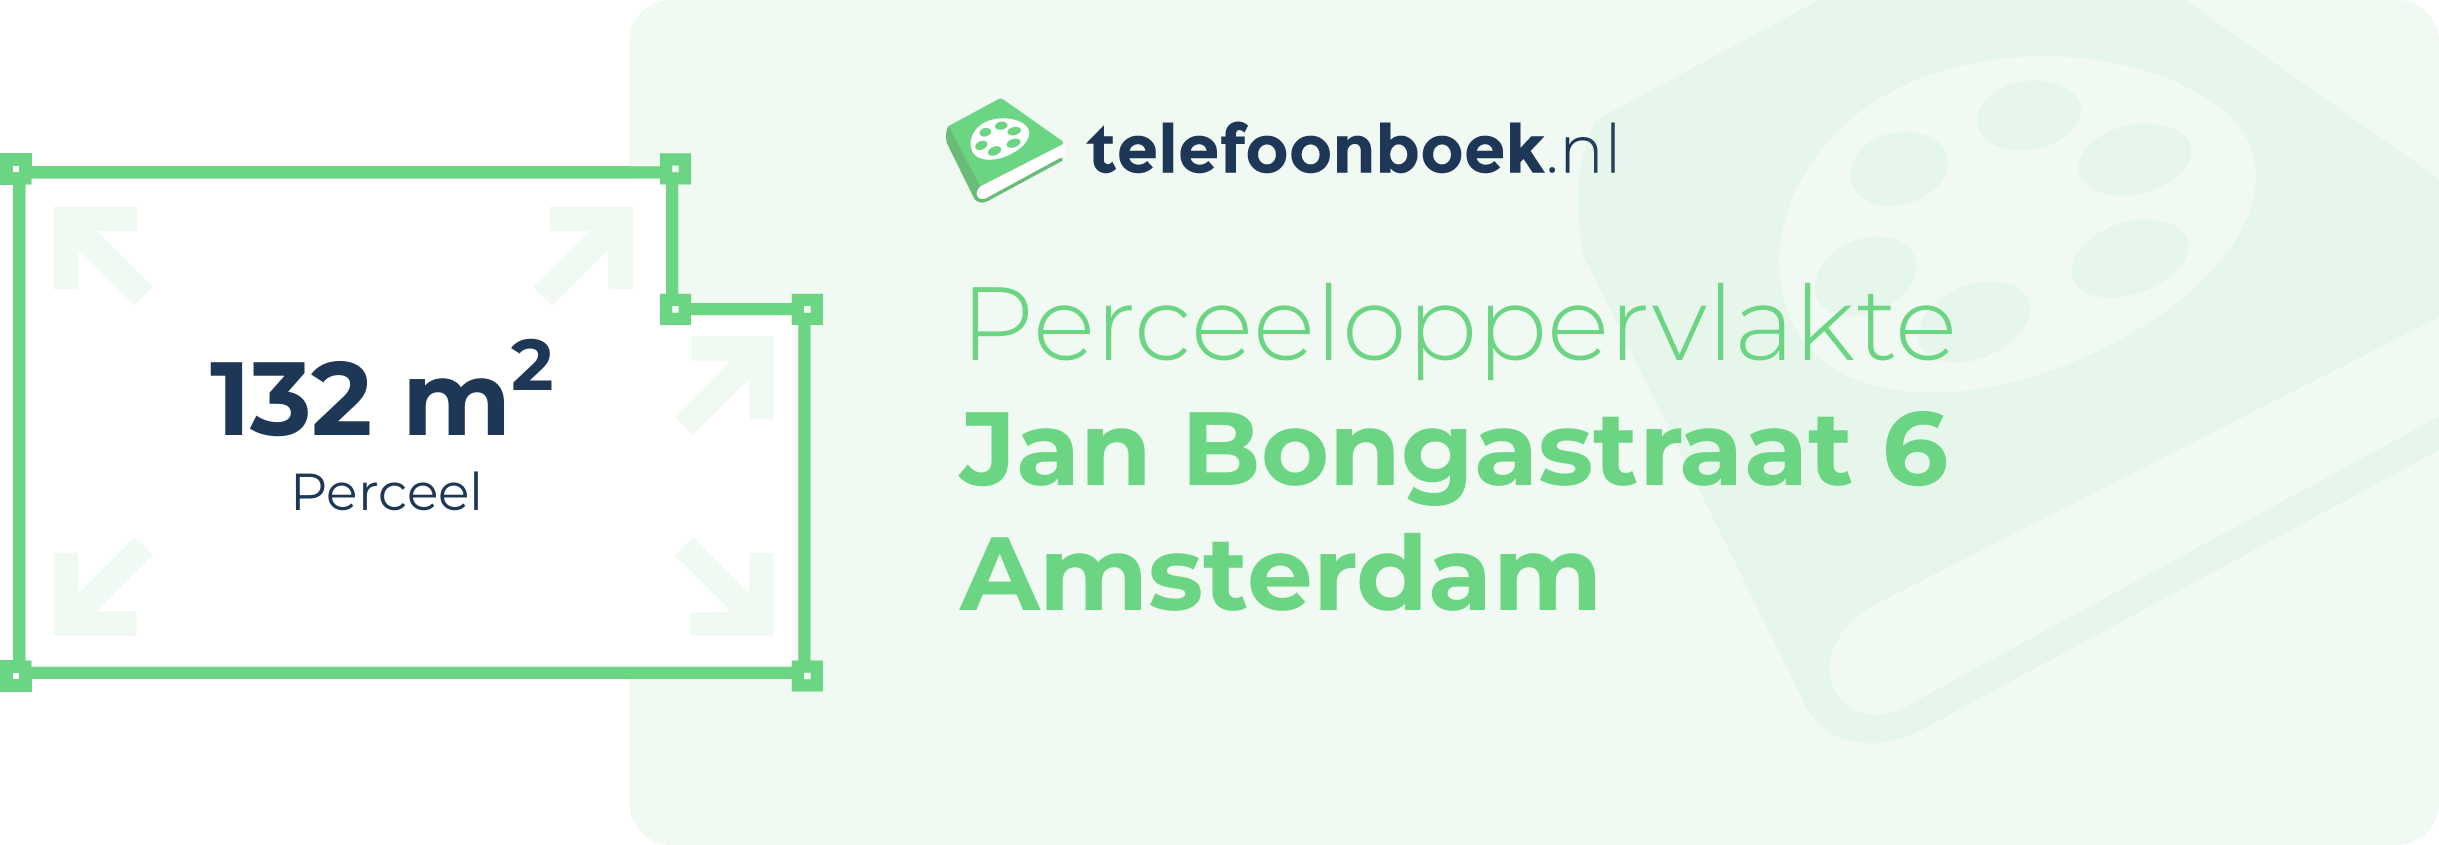 Perceeloppervlakte Jan Bongastraat 6 Amsterdam